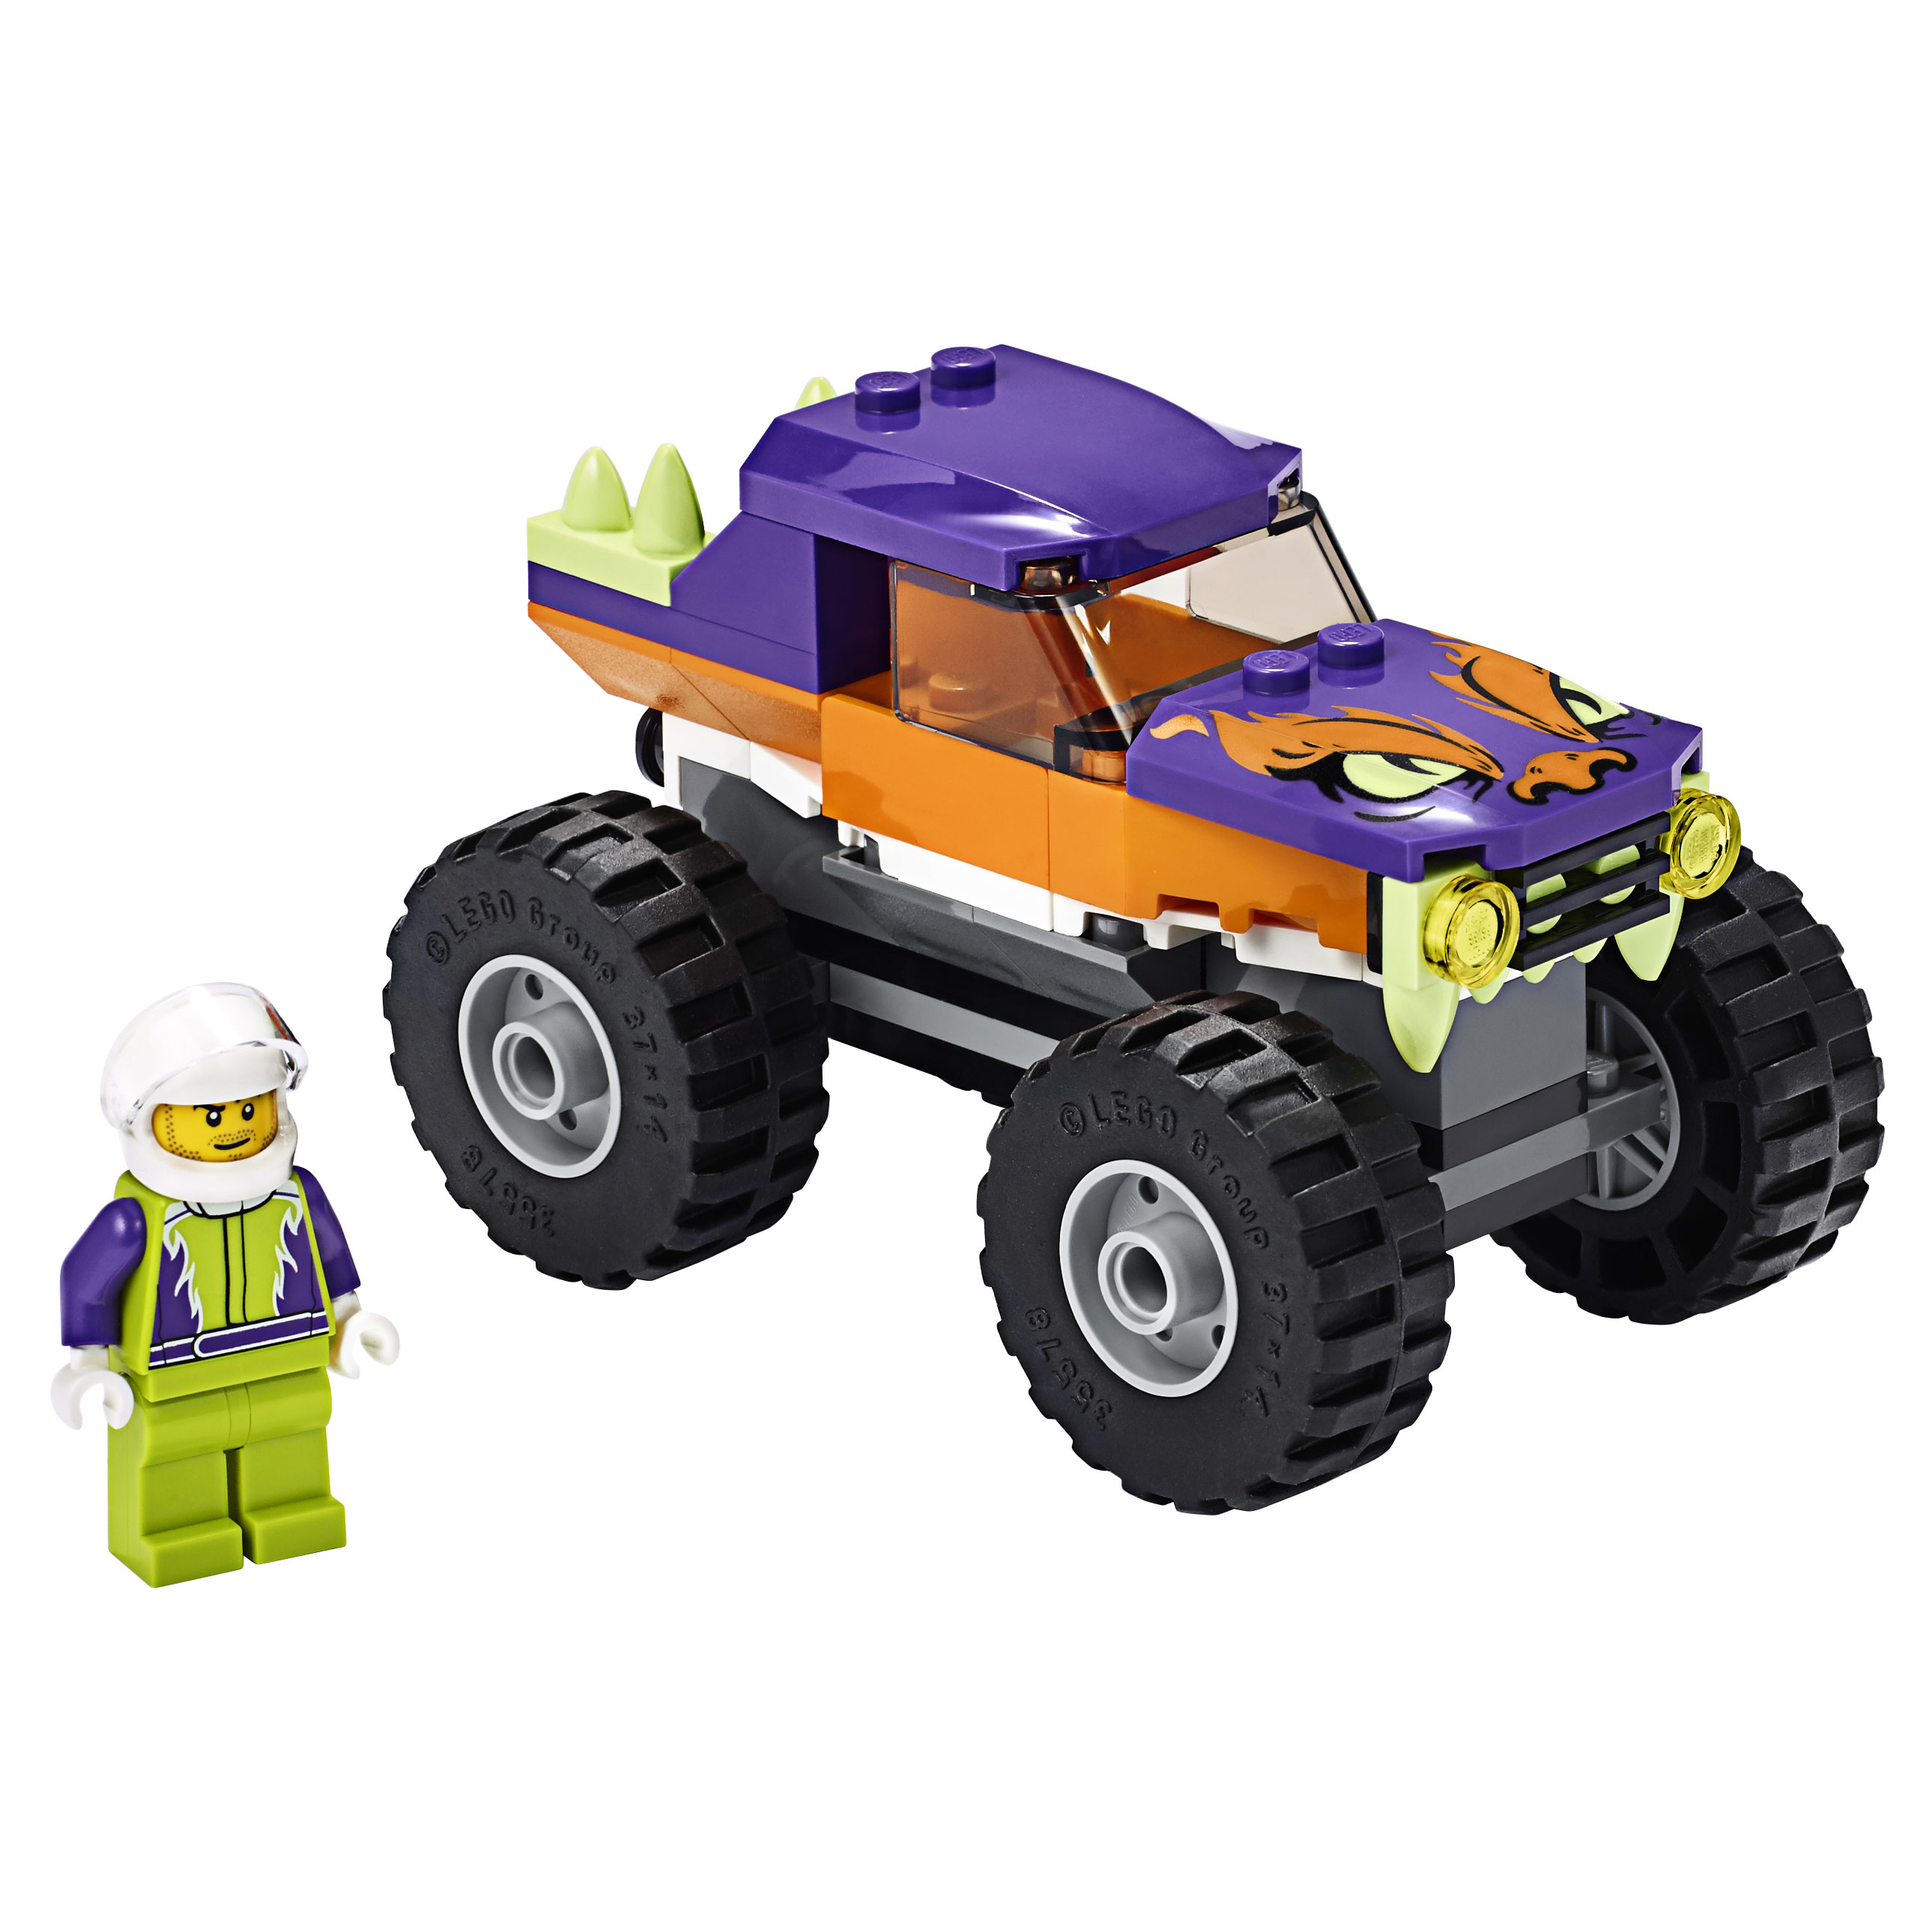 Конструктор LEGO City Great Vehicles 60251 Монстр-трак иди и возвращайся